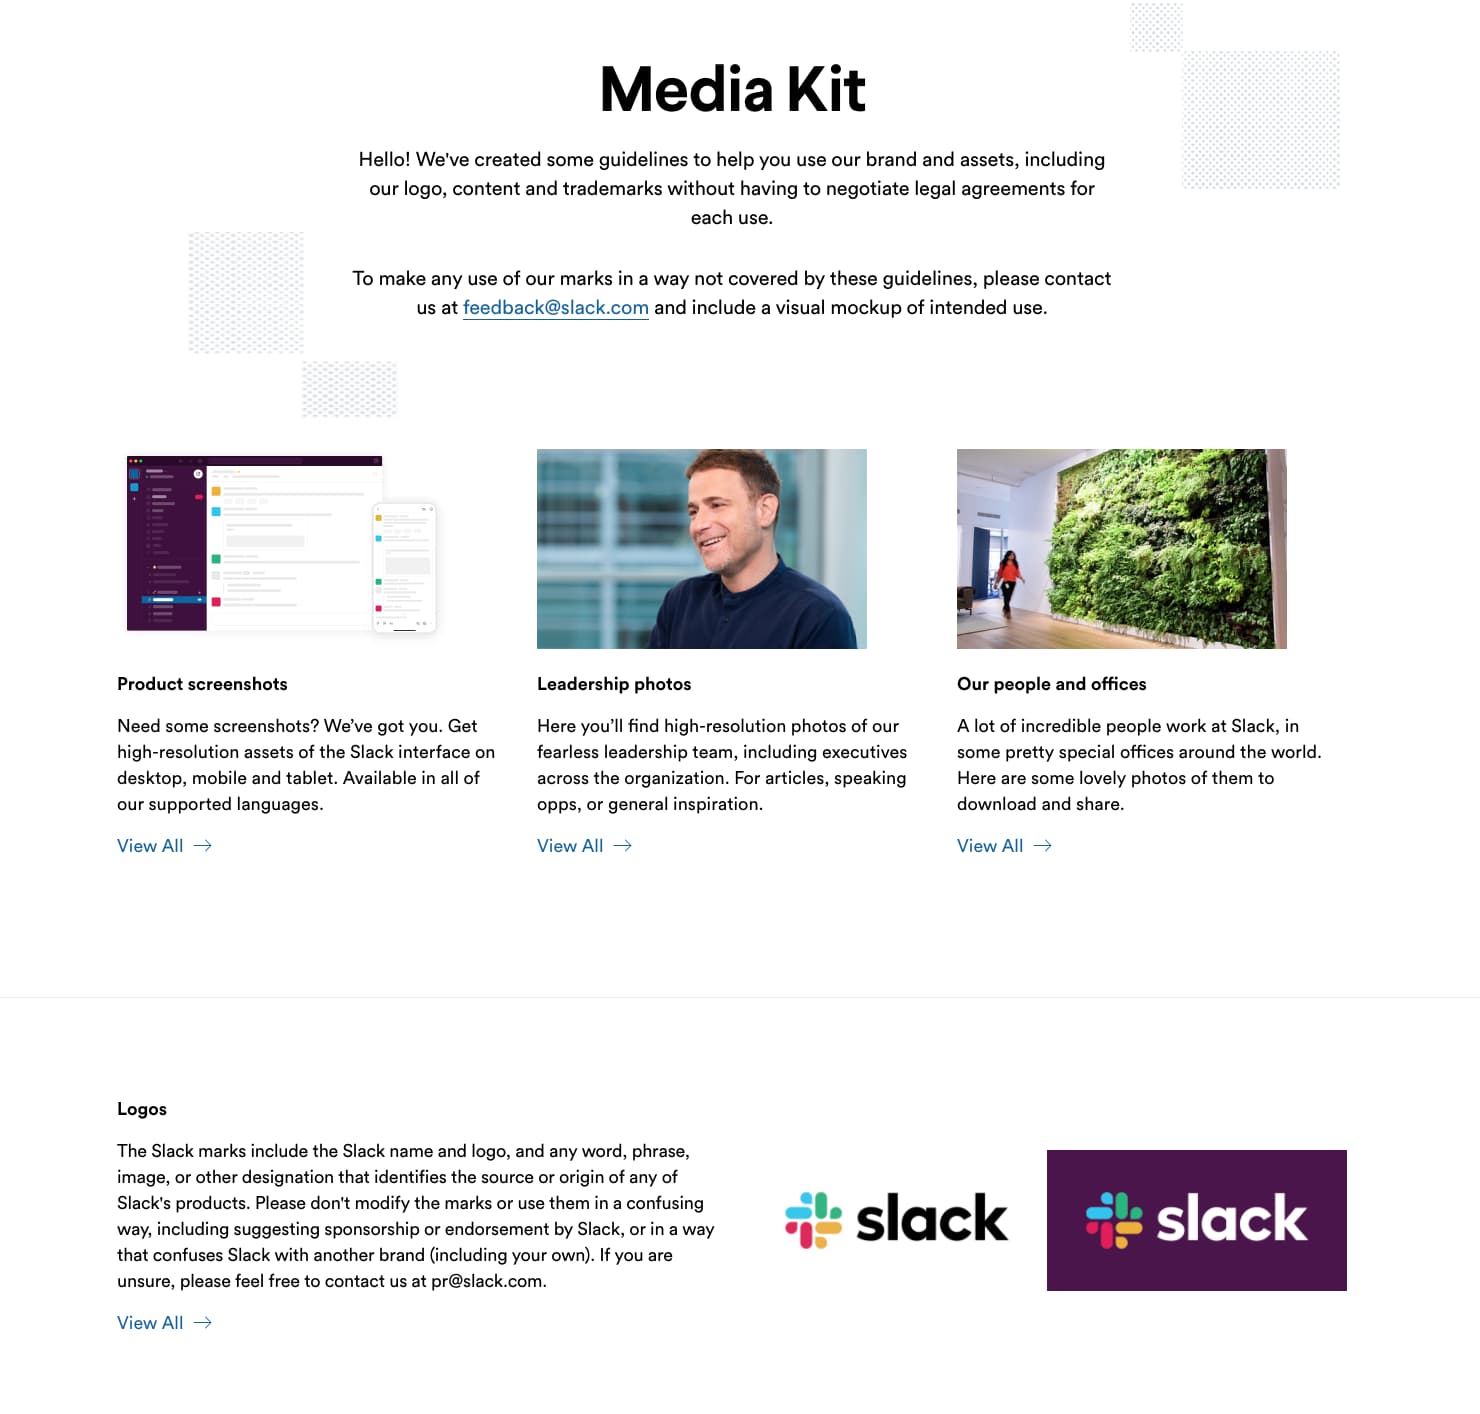 Indice dei contenuti del media kit del sito web slack